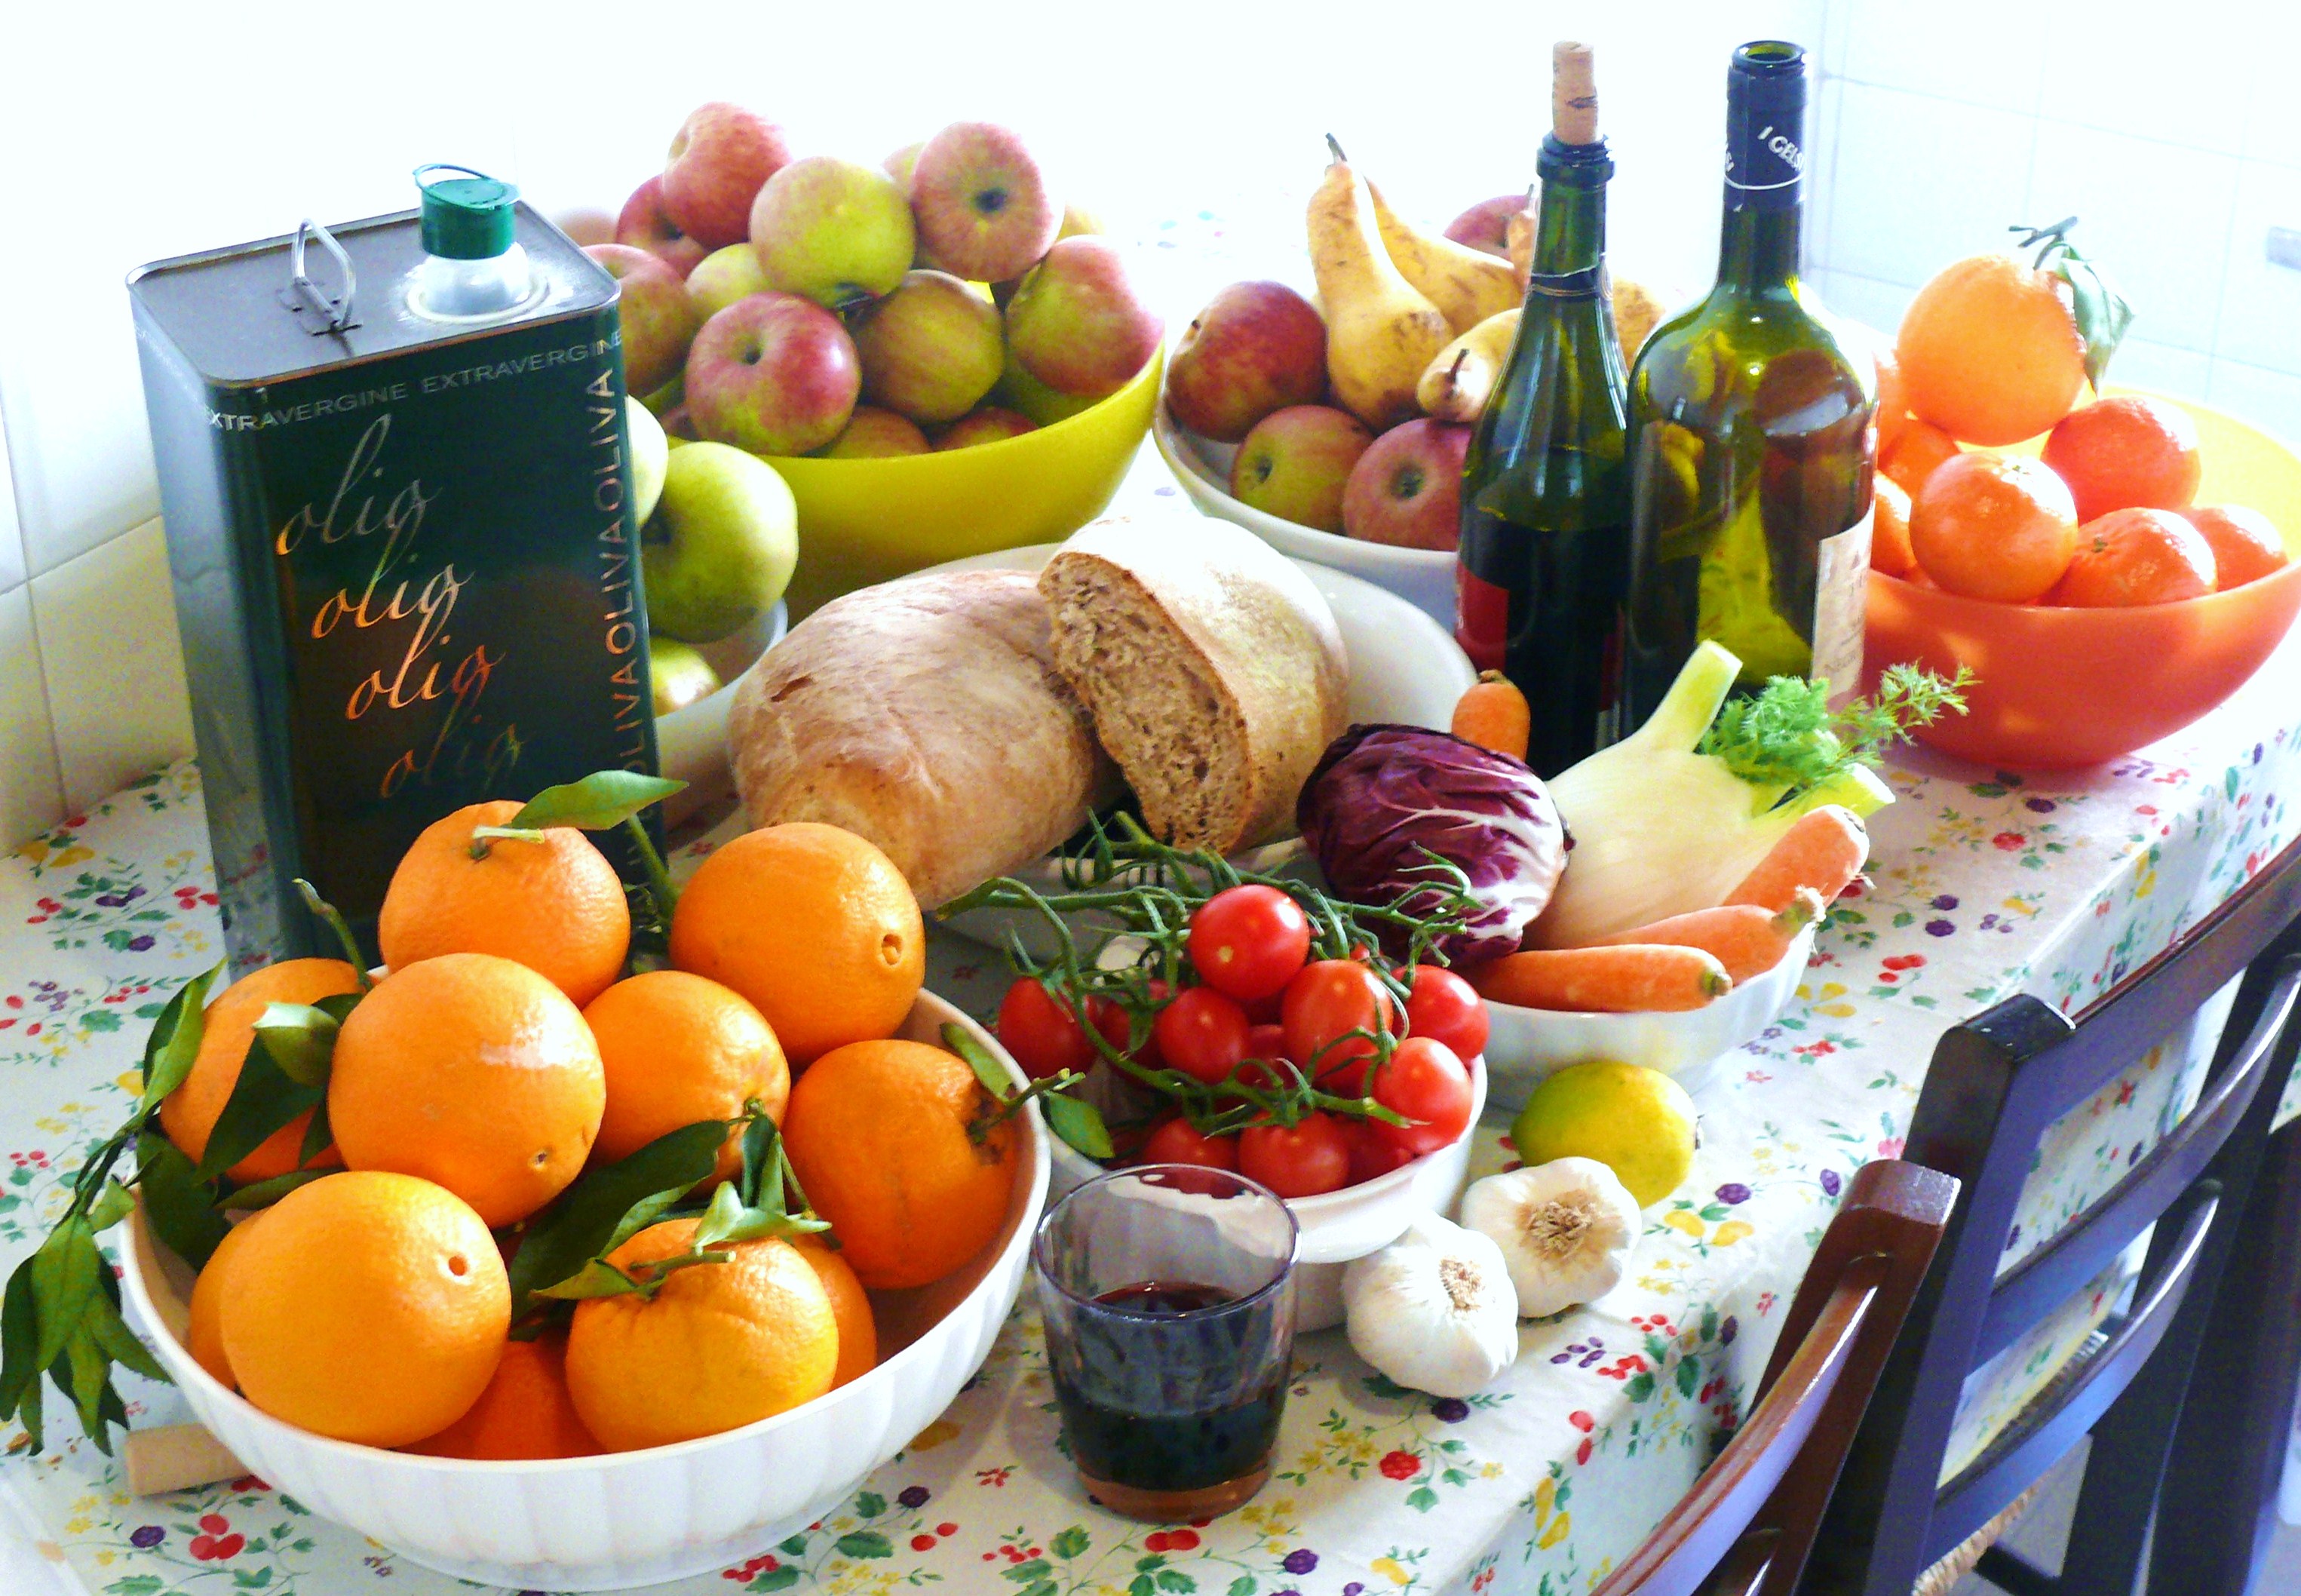 Una dieta mediterranea verde può aiutarti a mantenerti giovane? Uno studio dice di sì. Ecco perché